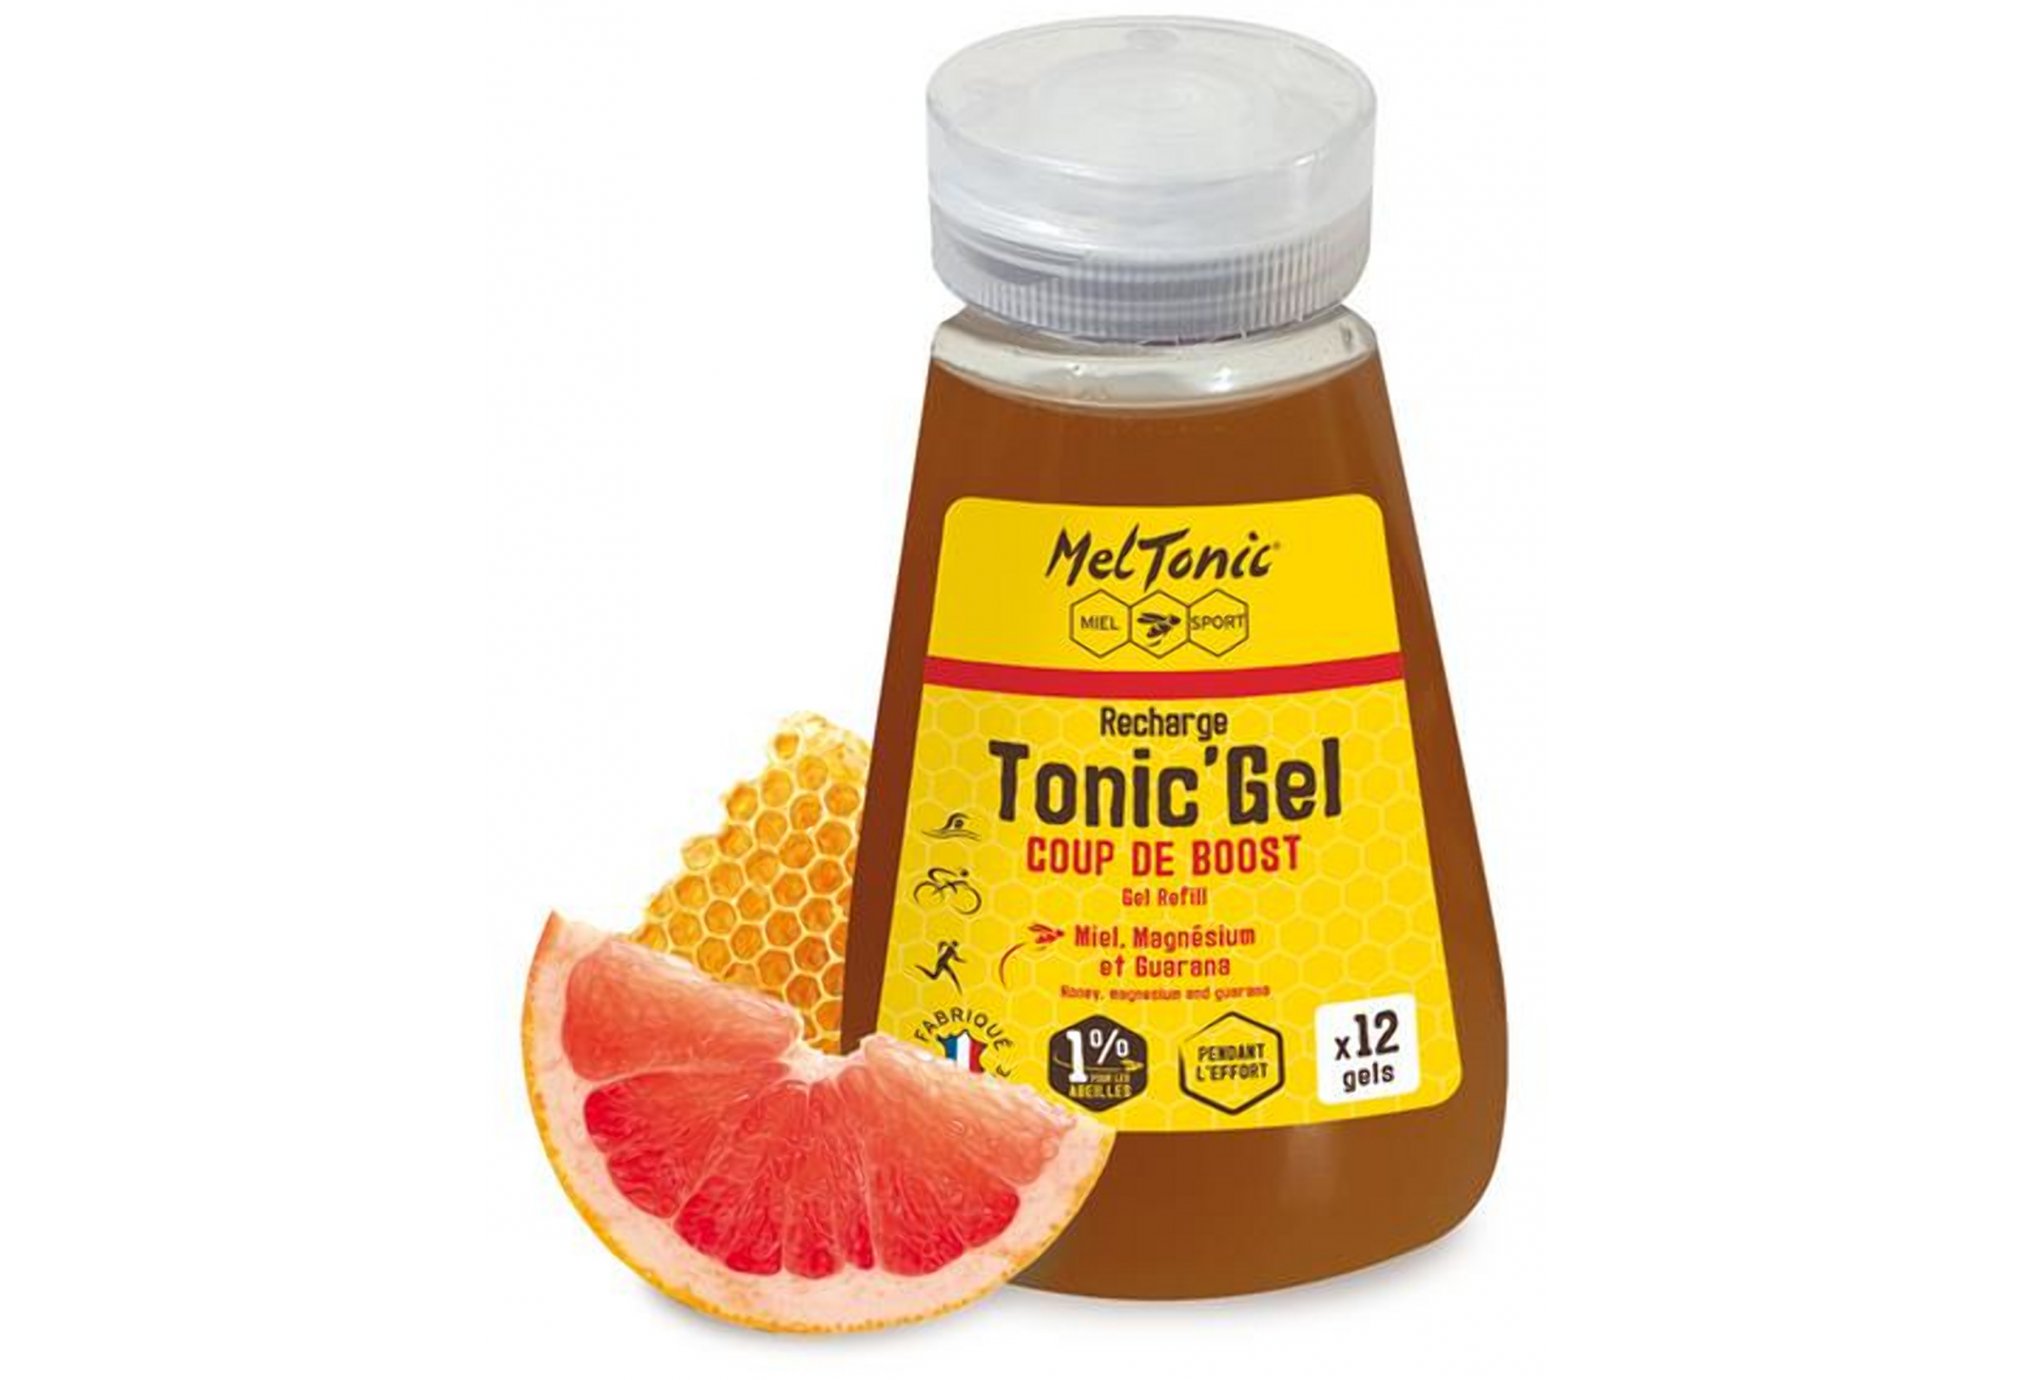 MelTonic Recharge Eco Tonic'Gel Coup de Boost Diététique Gels